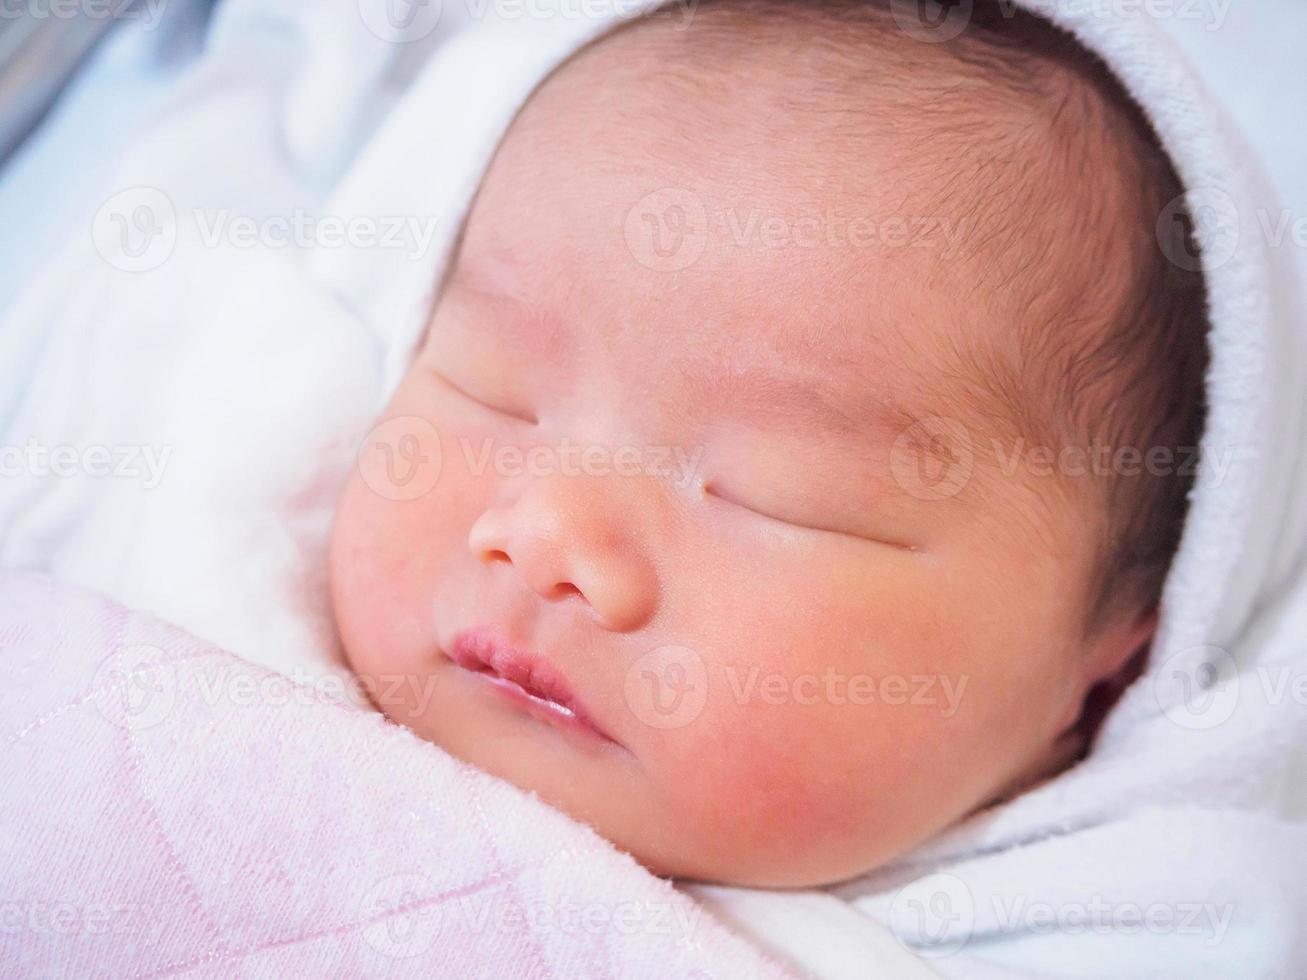 jolie petite fille asiatique nouveau-née photo